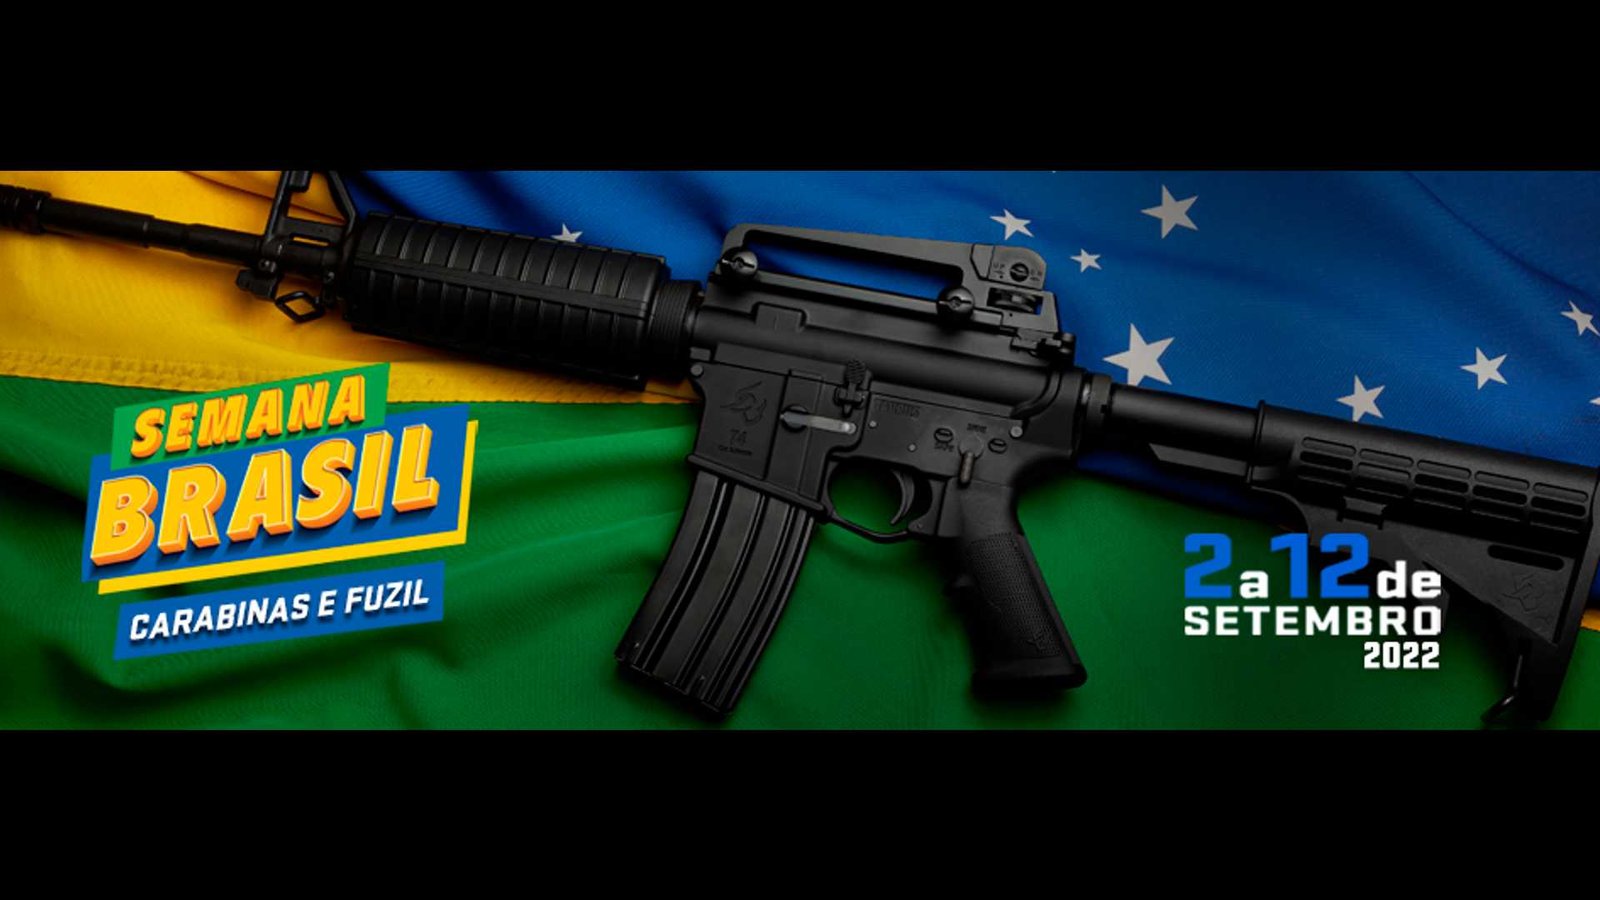 Semana do Brasil chega no mercado de armas e fábrica faz até promoção de fuzil